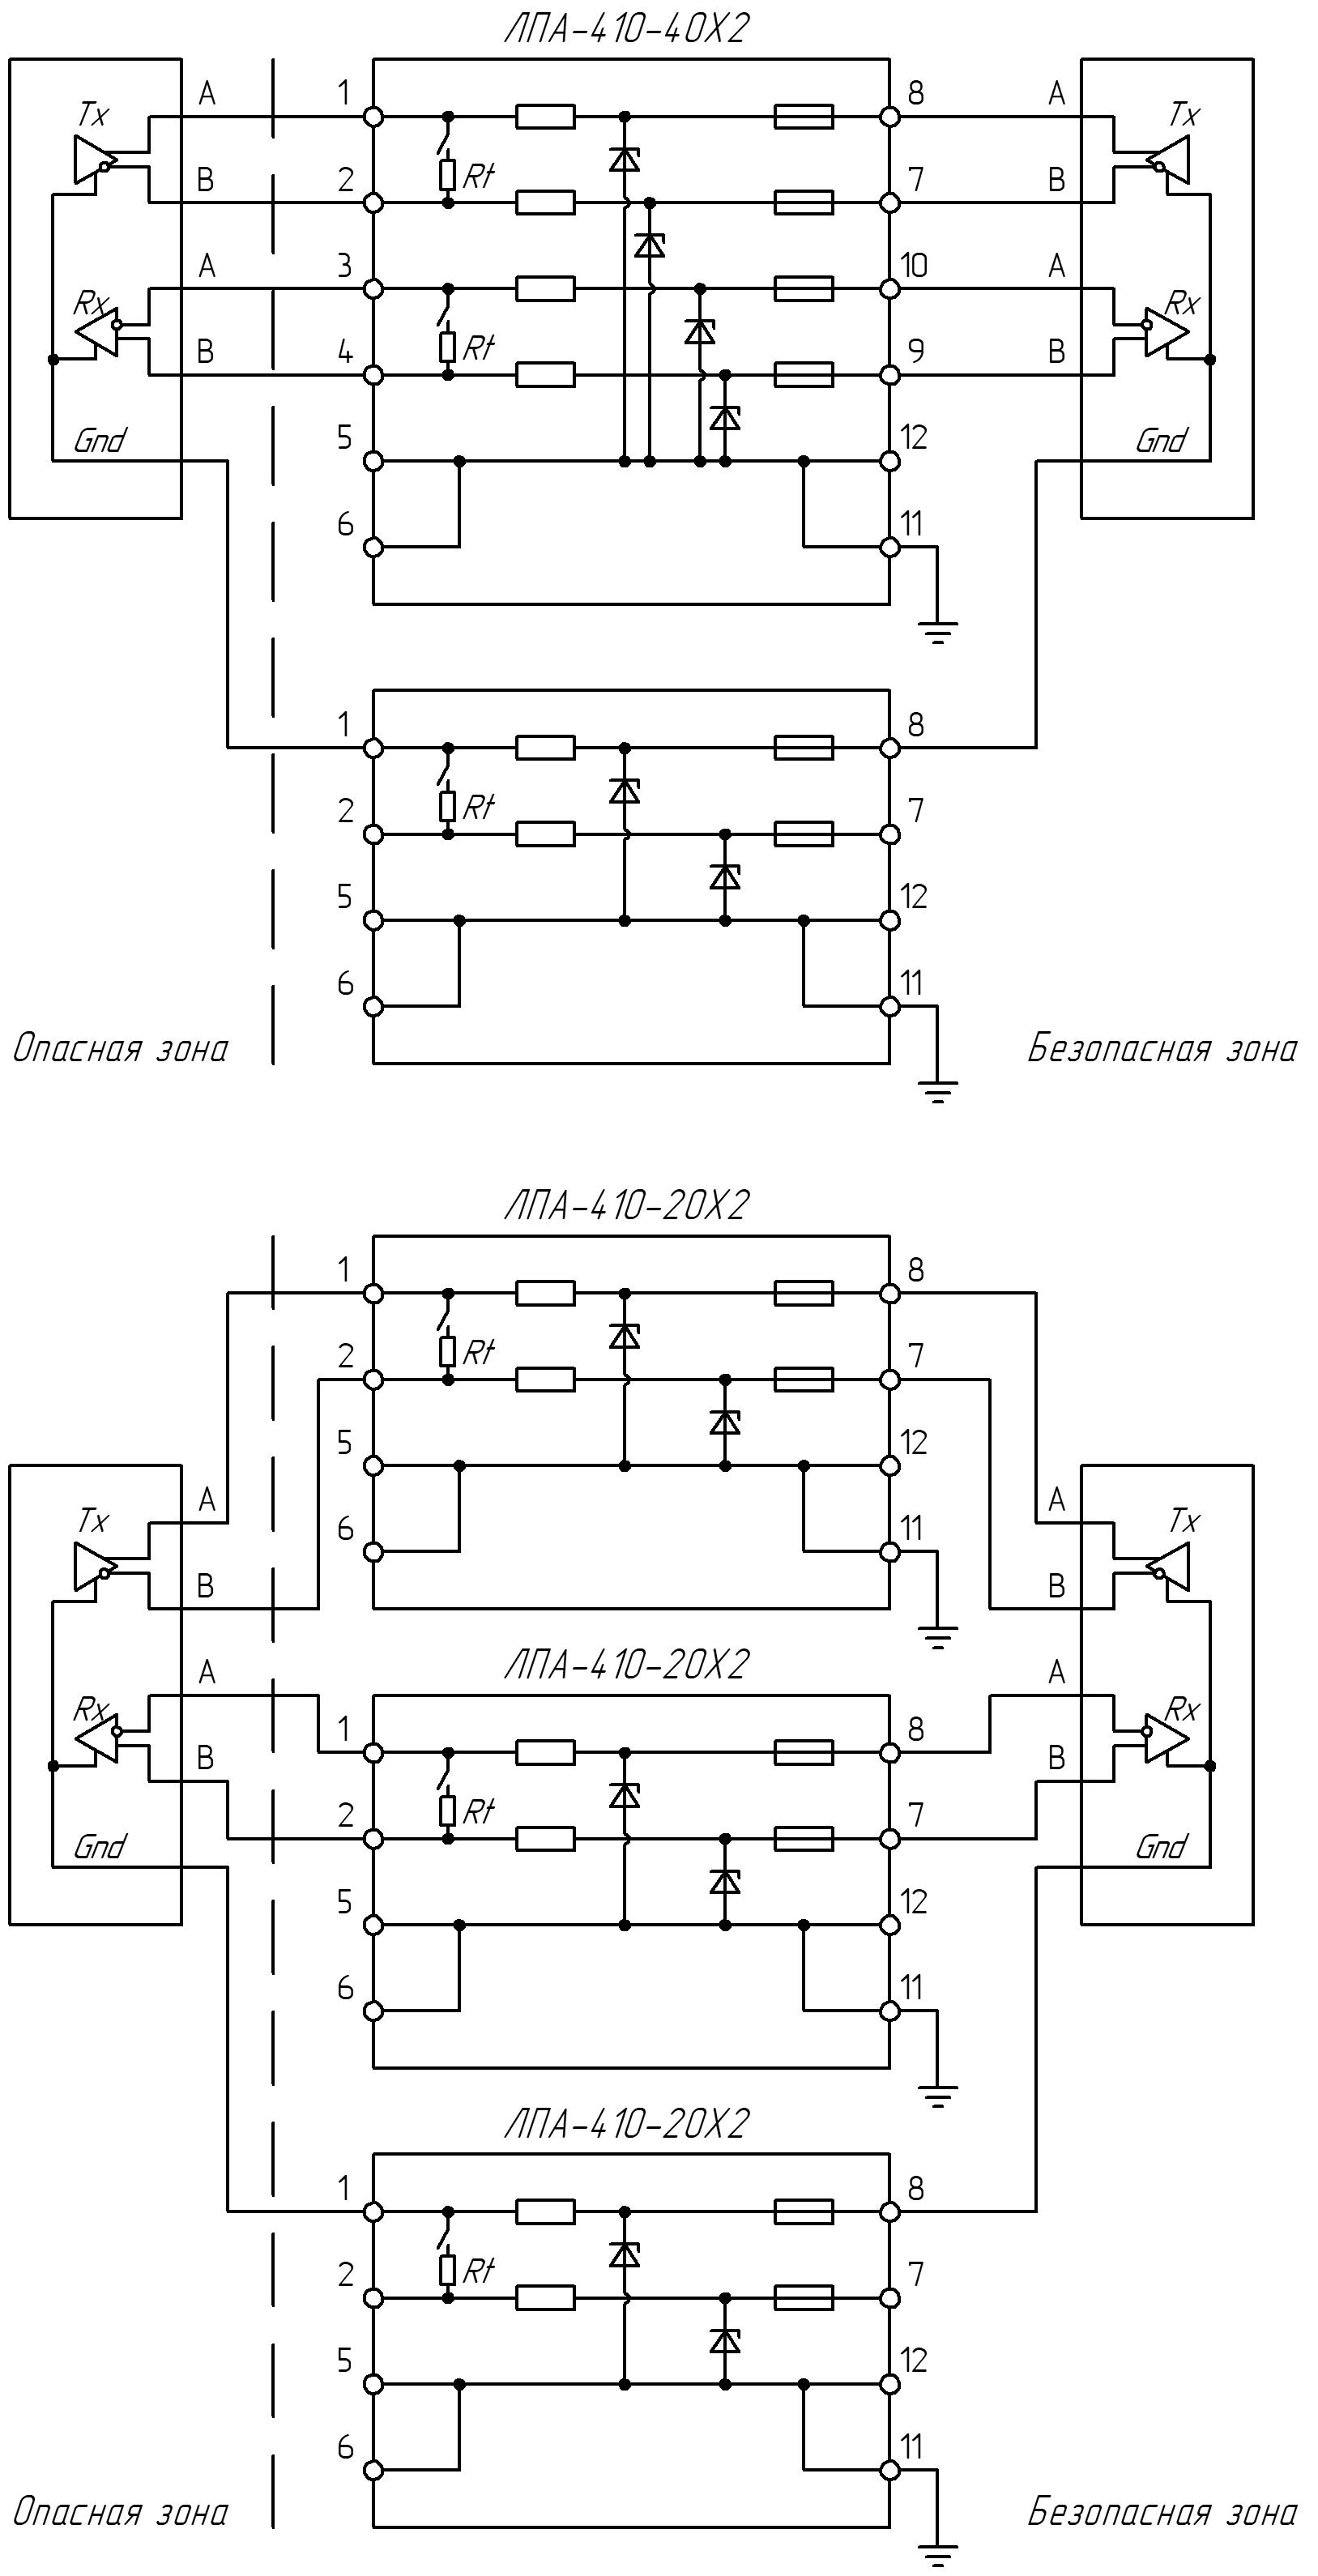 ЛПА-410 Типовые схемы подключения интерфейса RS-422 с изолированными приемопередатчиками